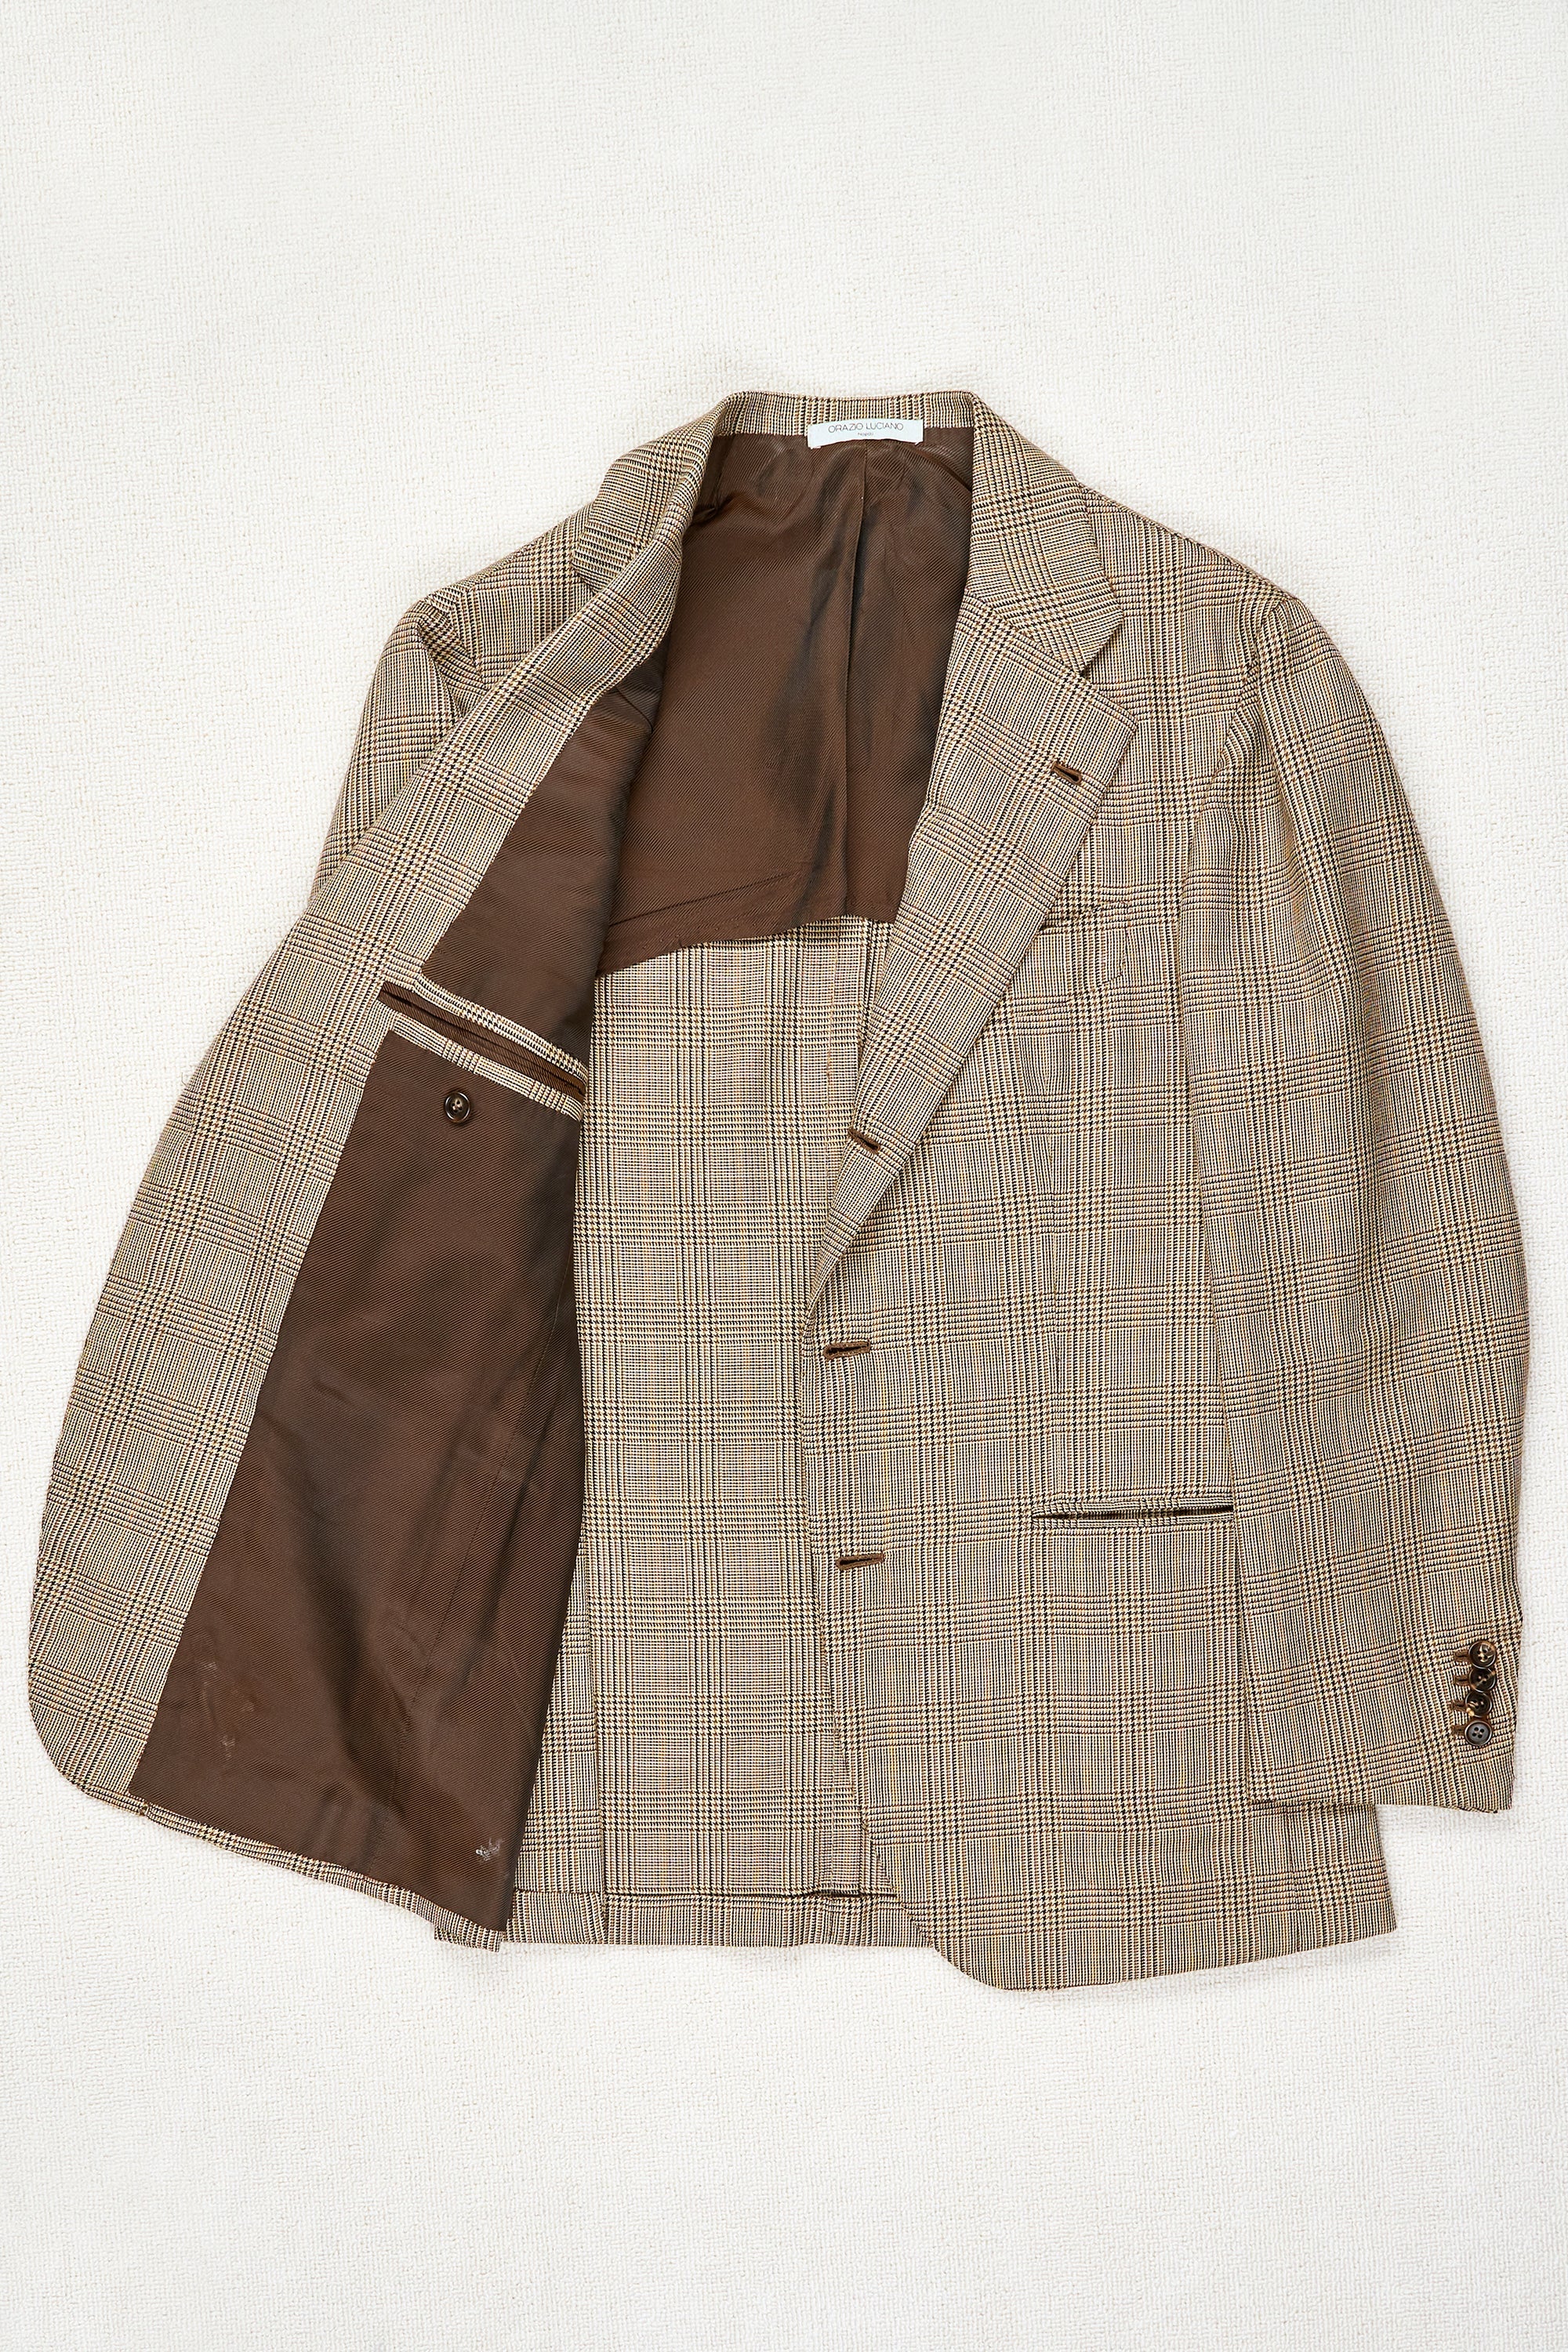 Orazio Luciano Brown Check Wool Sport Coat